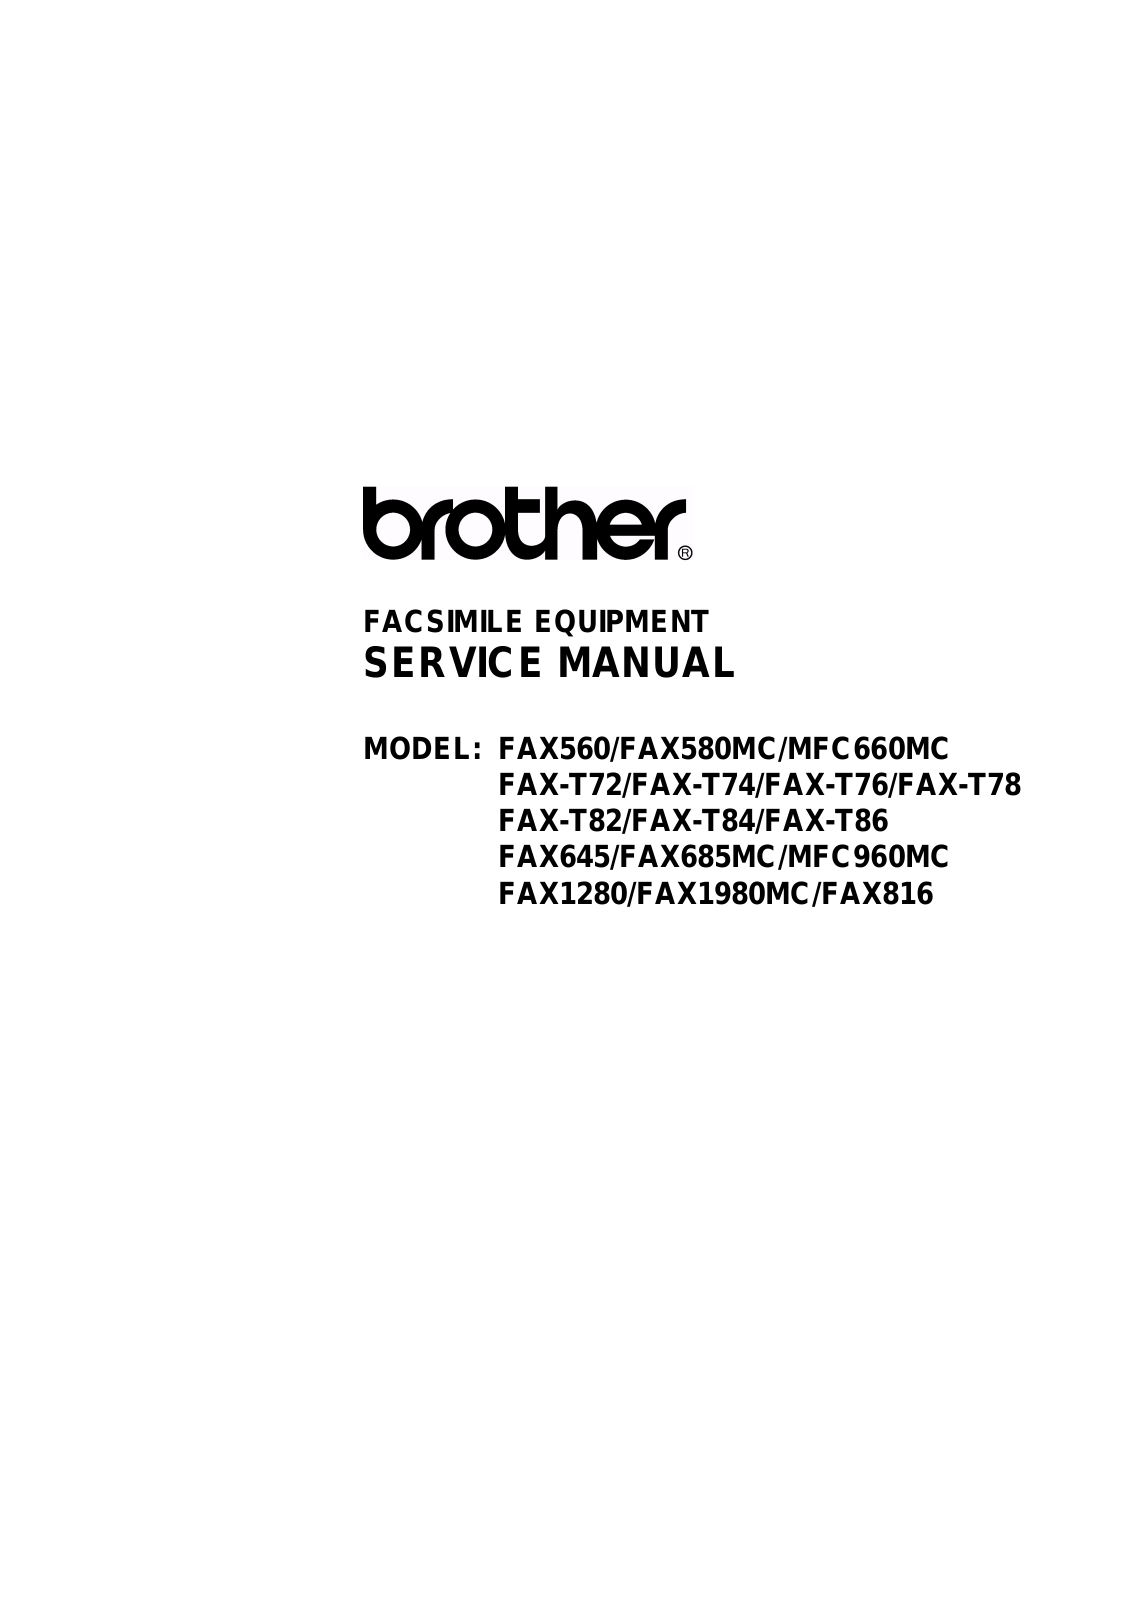 Brother FAX560, FAX580MC, MFC660MC, FAXT72, FAXT74 Service Manual